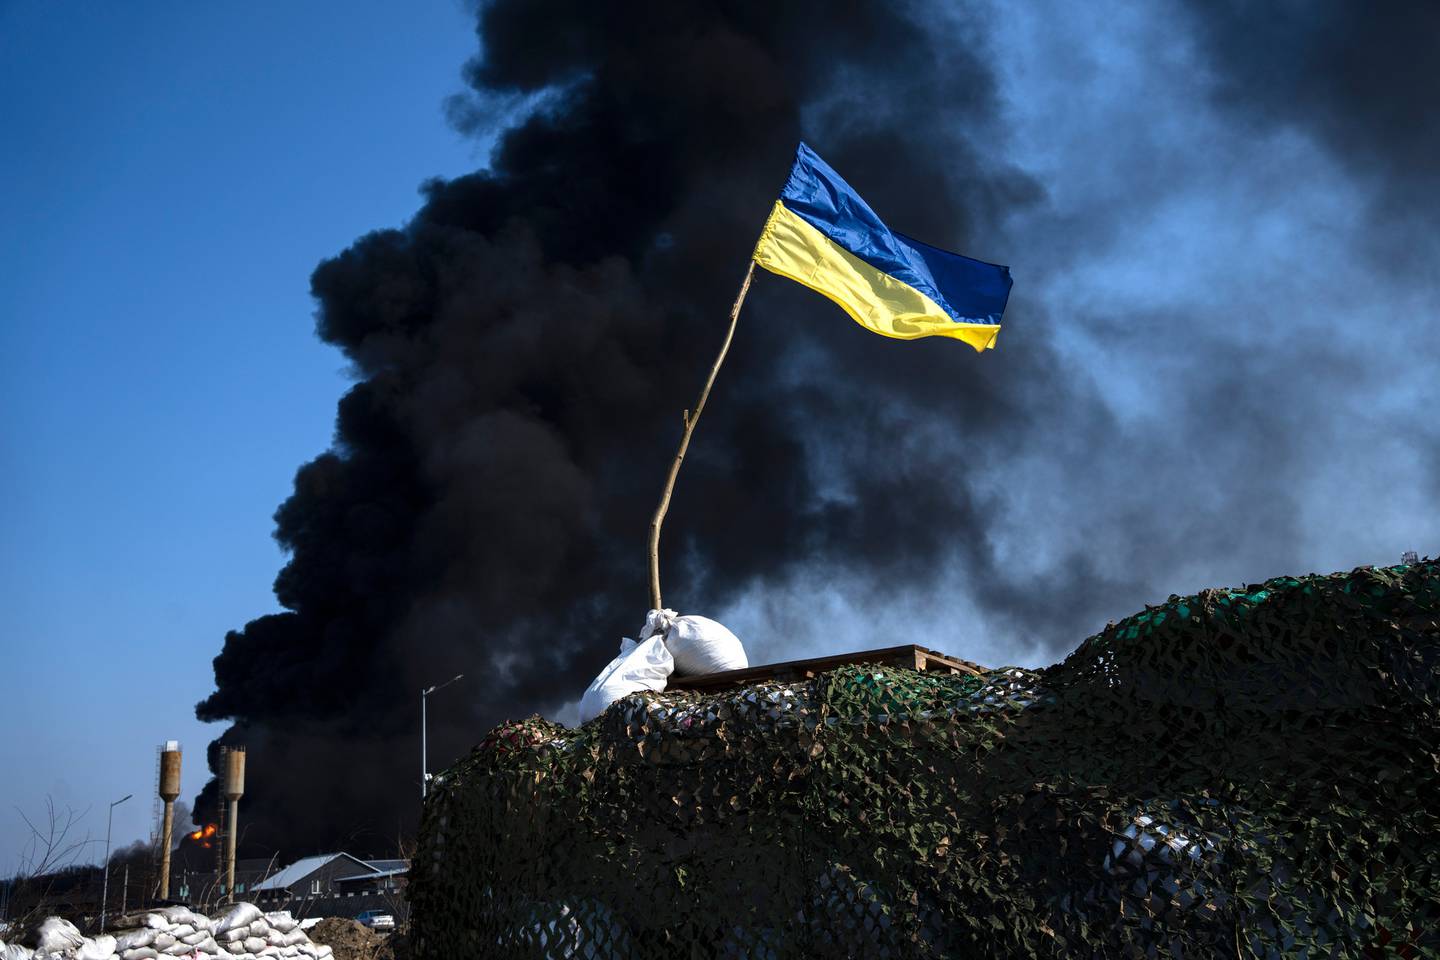 3 月 25 日，在俄罗斯发动袭击后，乌克兰军队在基辅郊区的燃料库中冒出黑烟，在检查站的顶部可以看到一面乌克兰国旗。照片/美联社